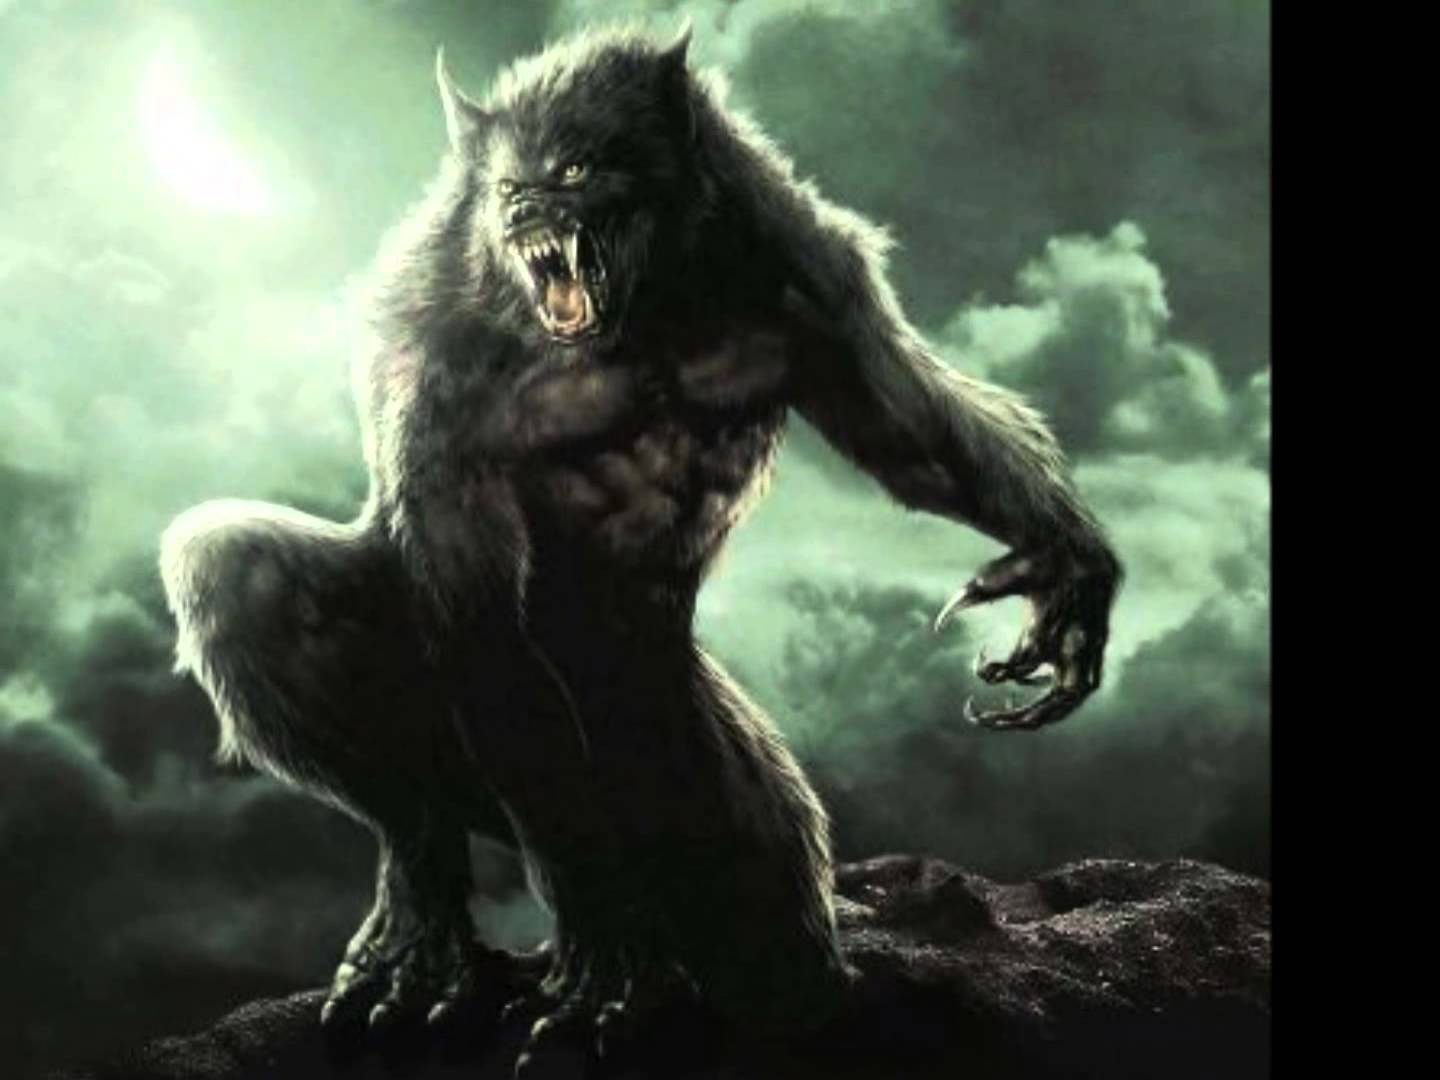 Van Helsing Werewolf Wallpapers - Top Free Van Helsing Werewolf Backgrounds  - WallpaperAccess